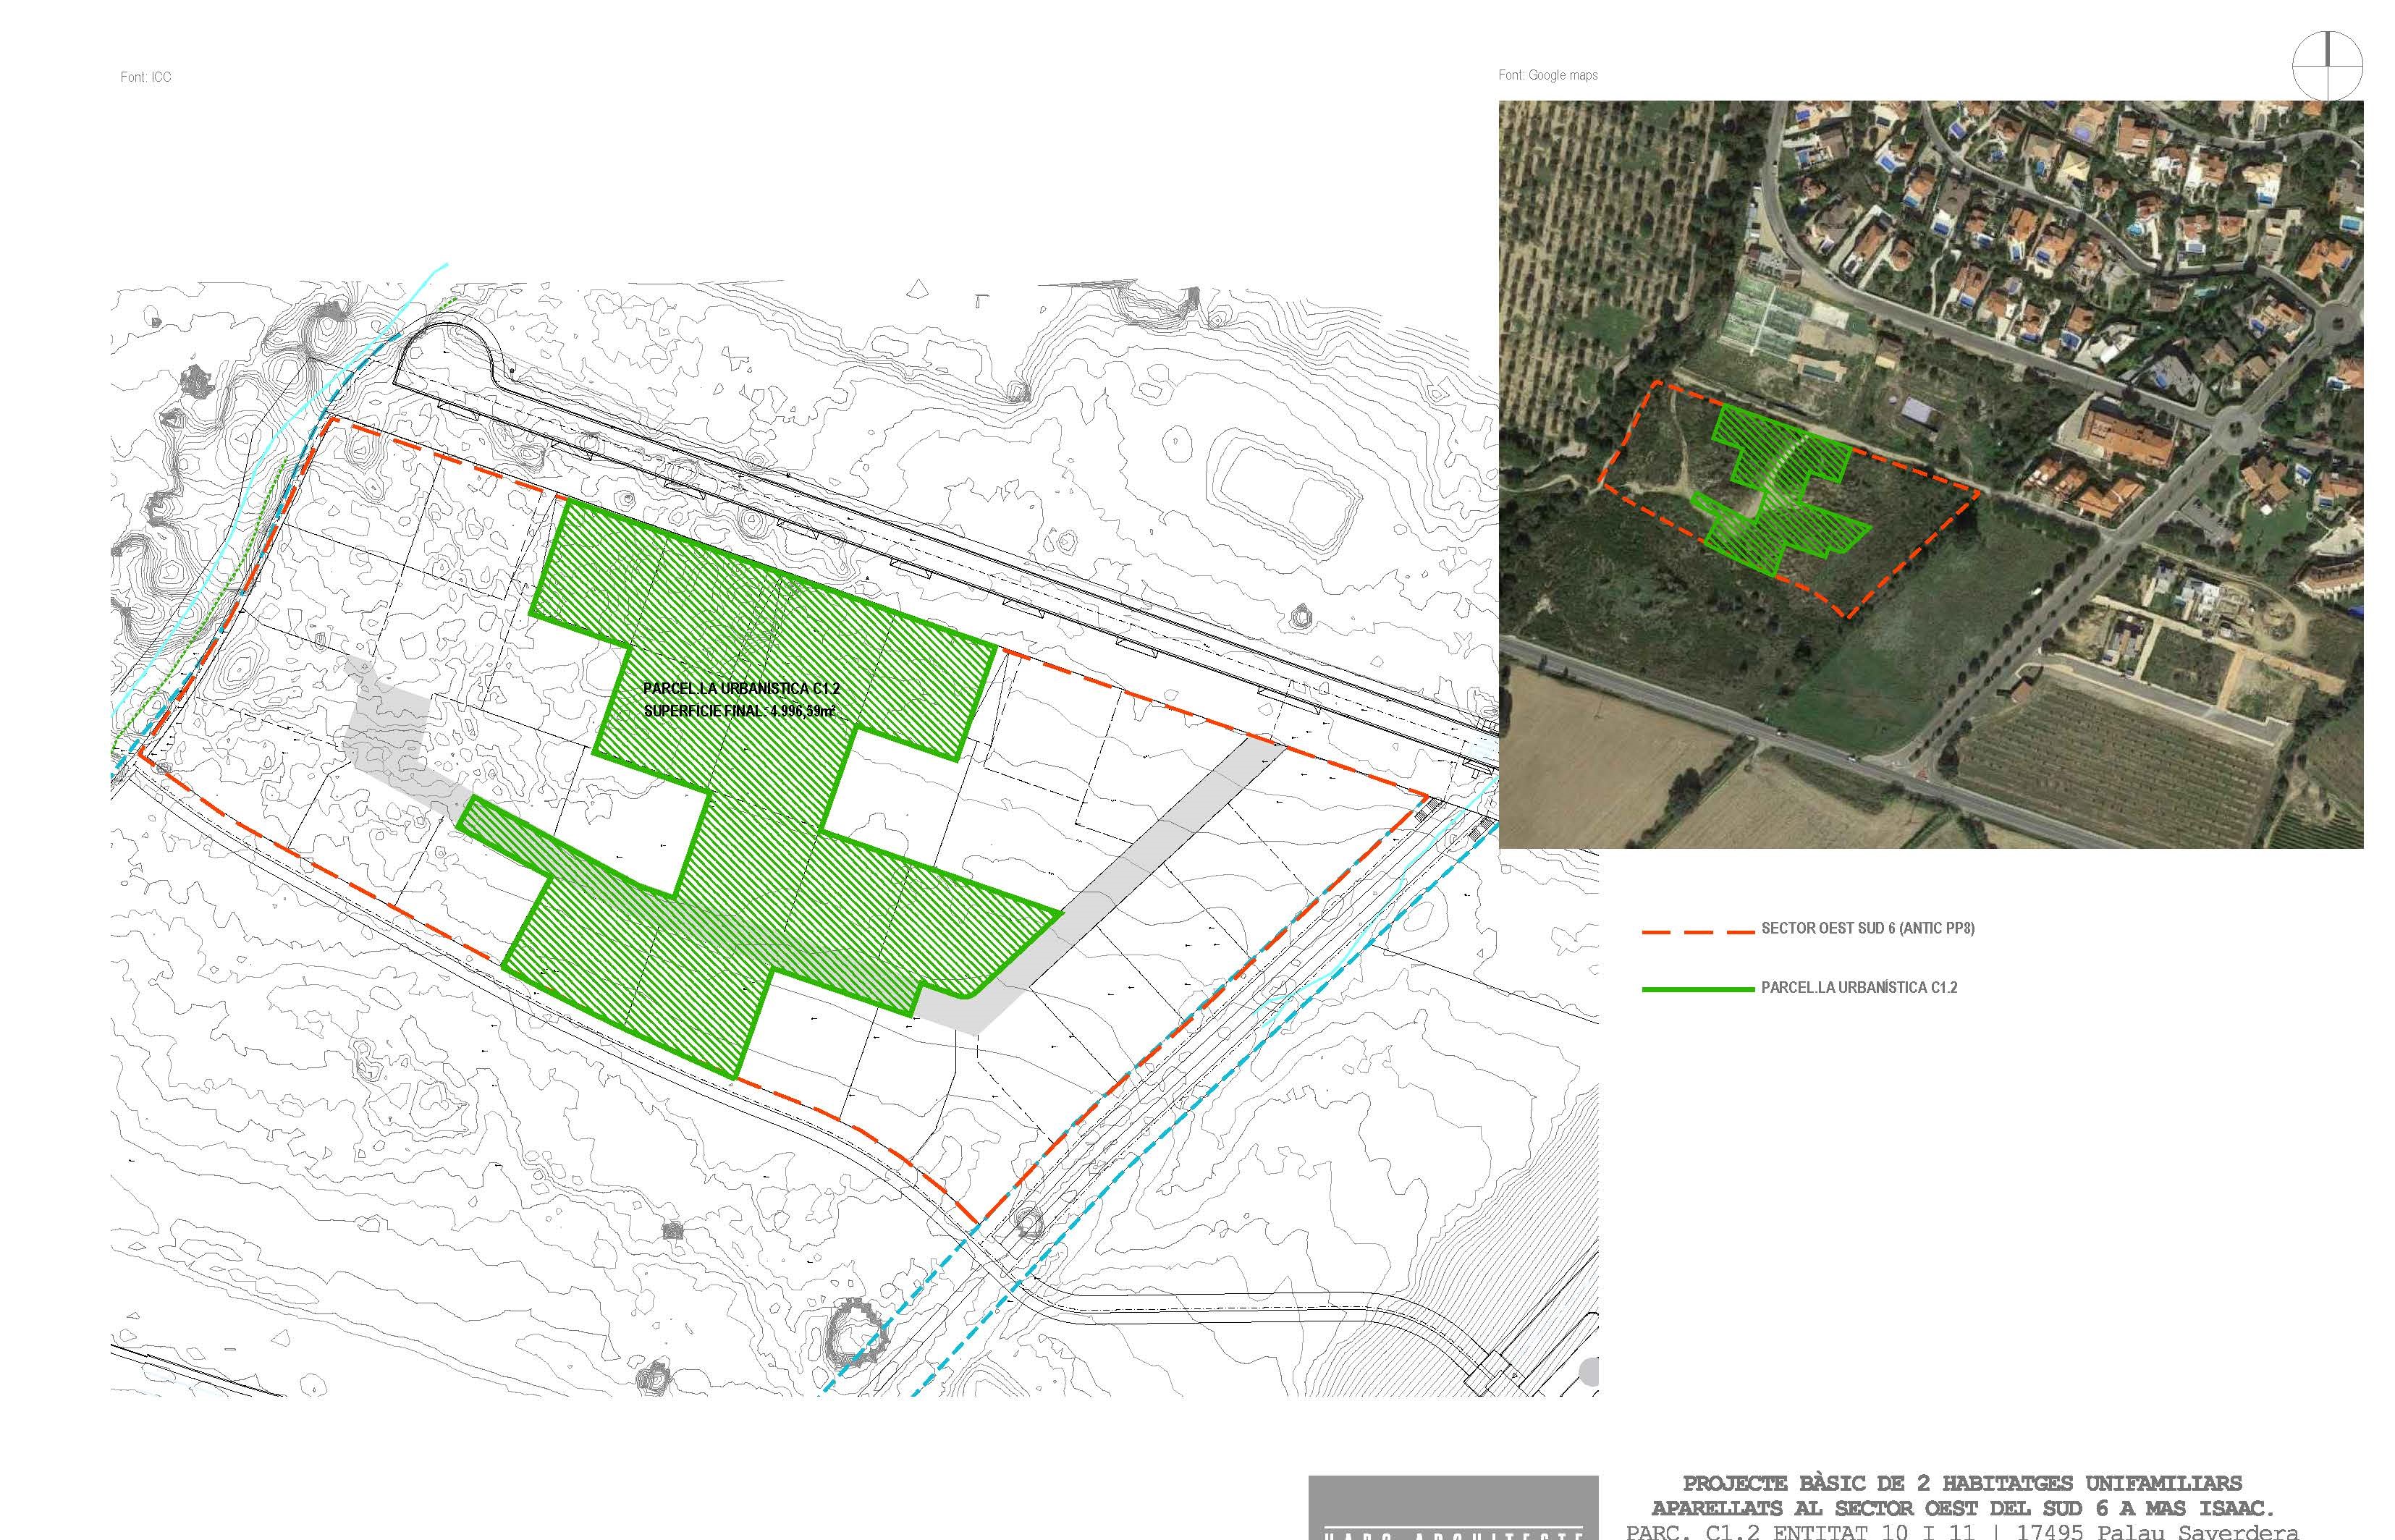 Terrains à vendre dans la nouvelle urbanisation de Mas Isaac, Palau Saverdera.